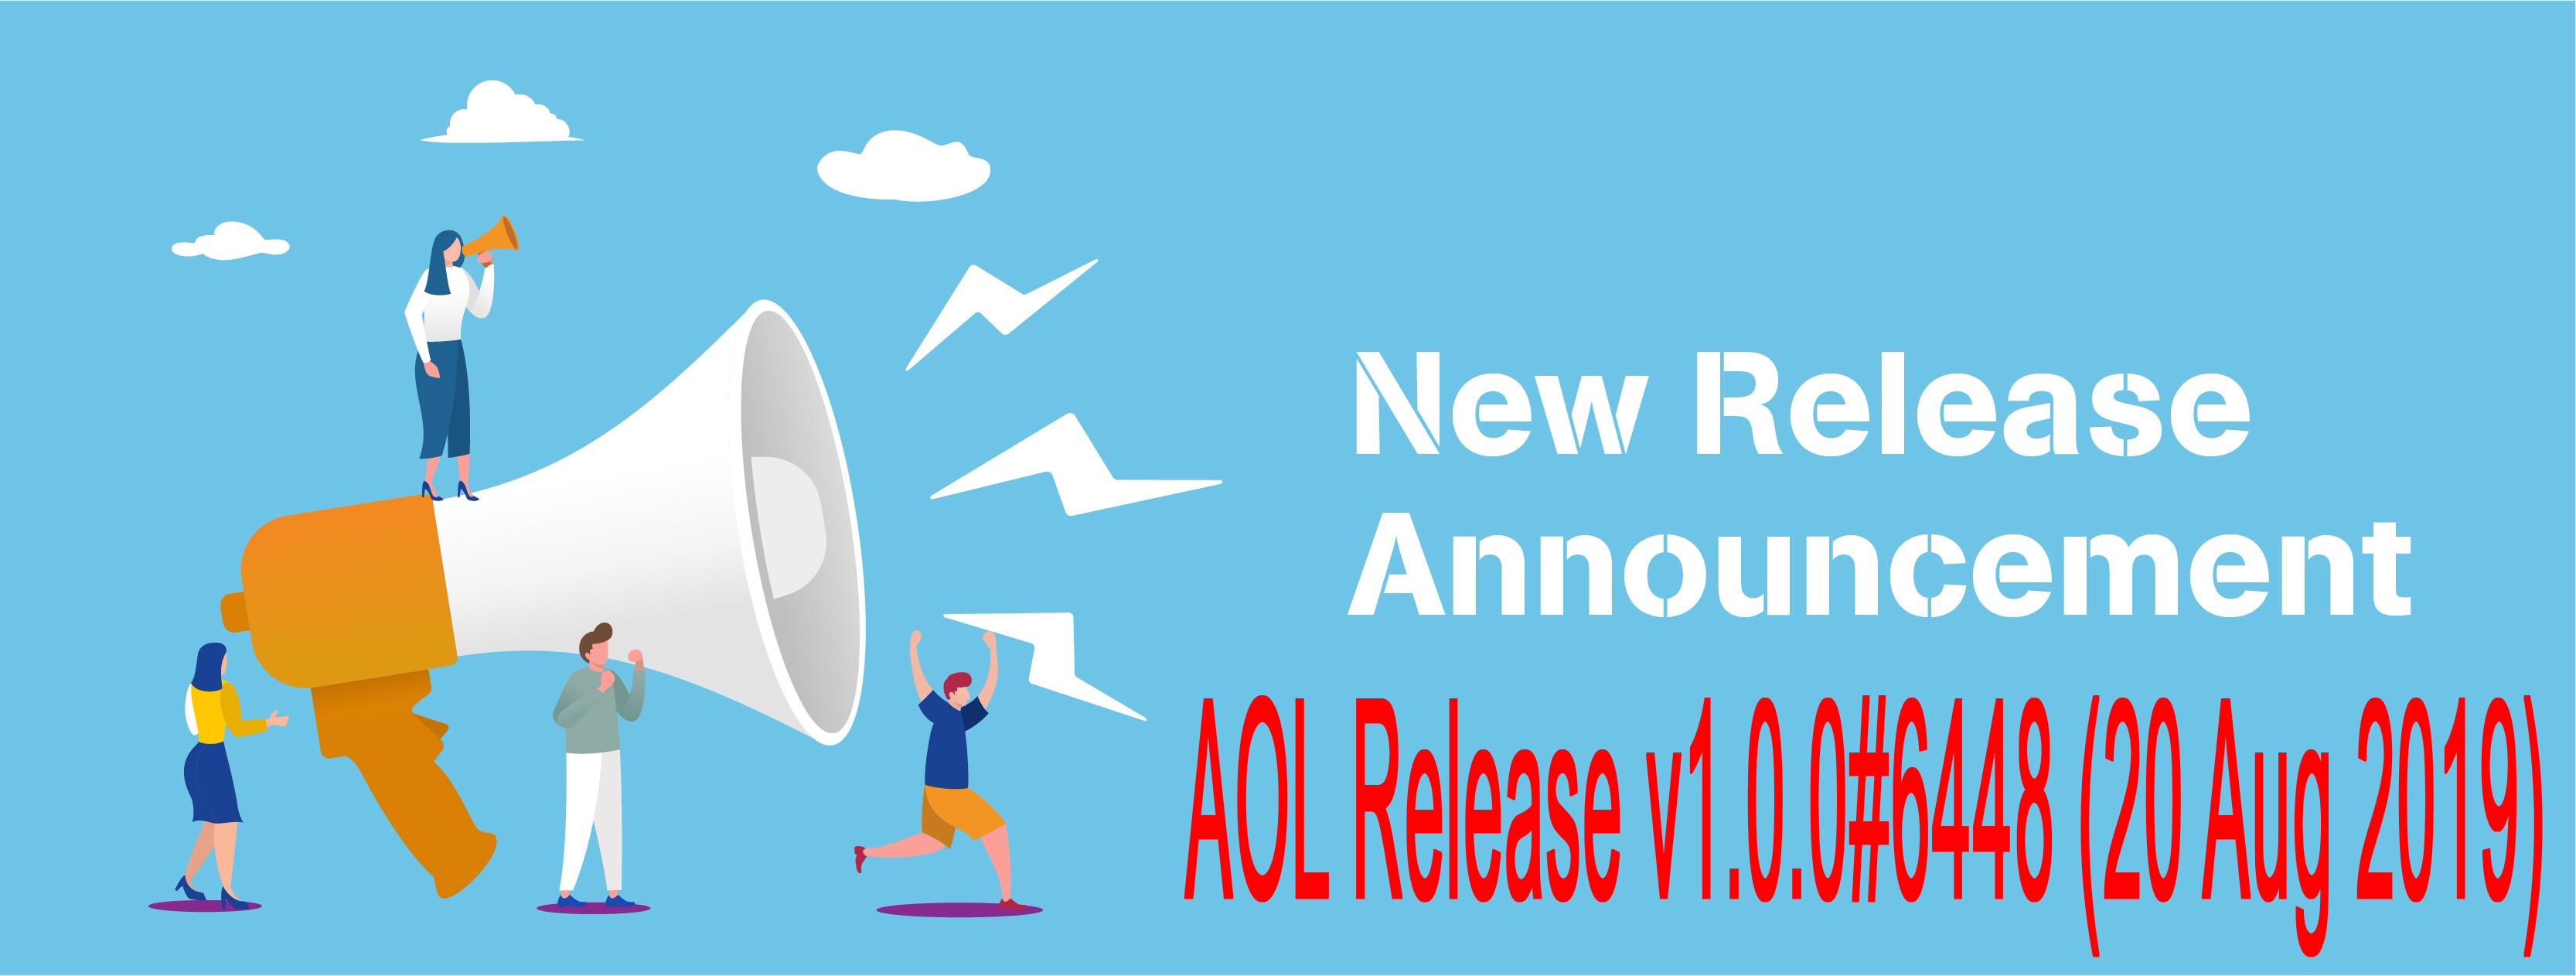 Release v1.0.0#6448 (20 Aug 2019)